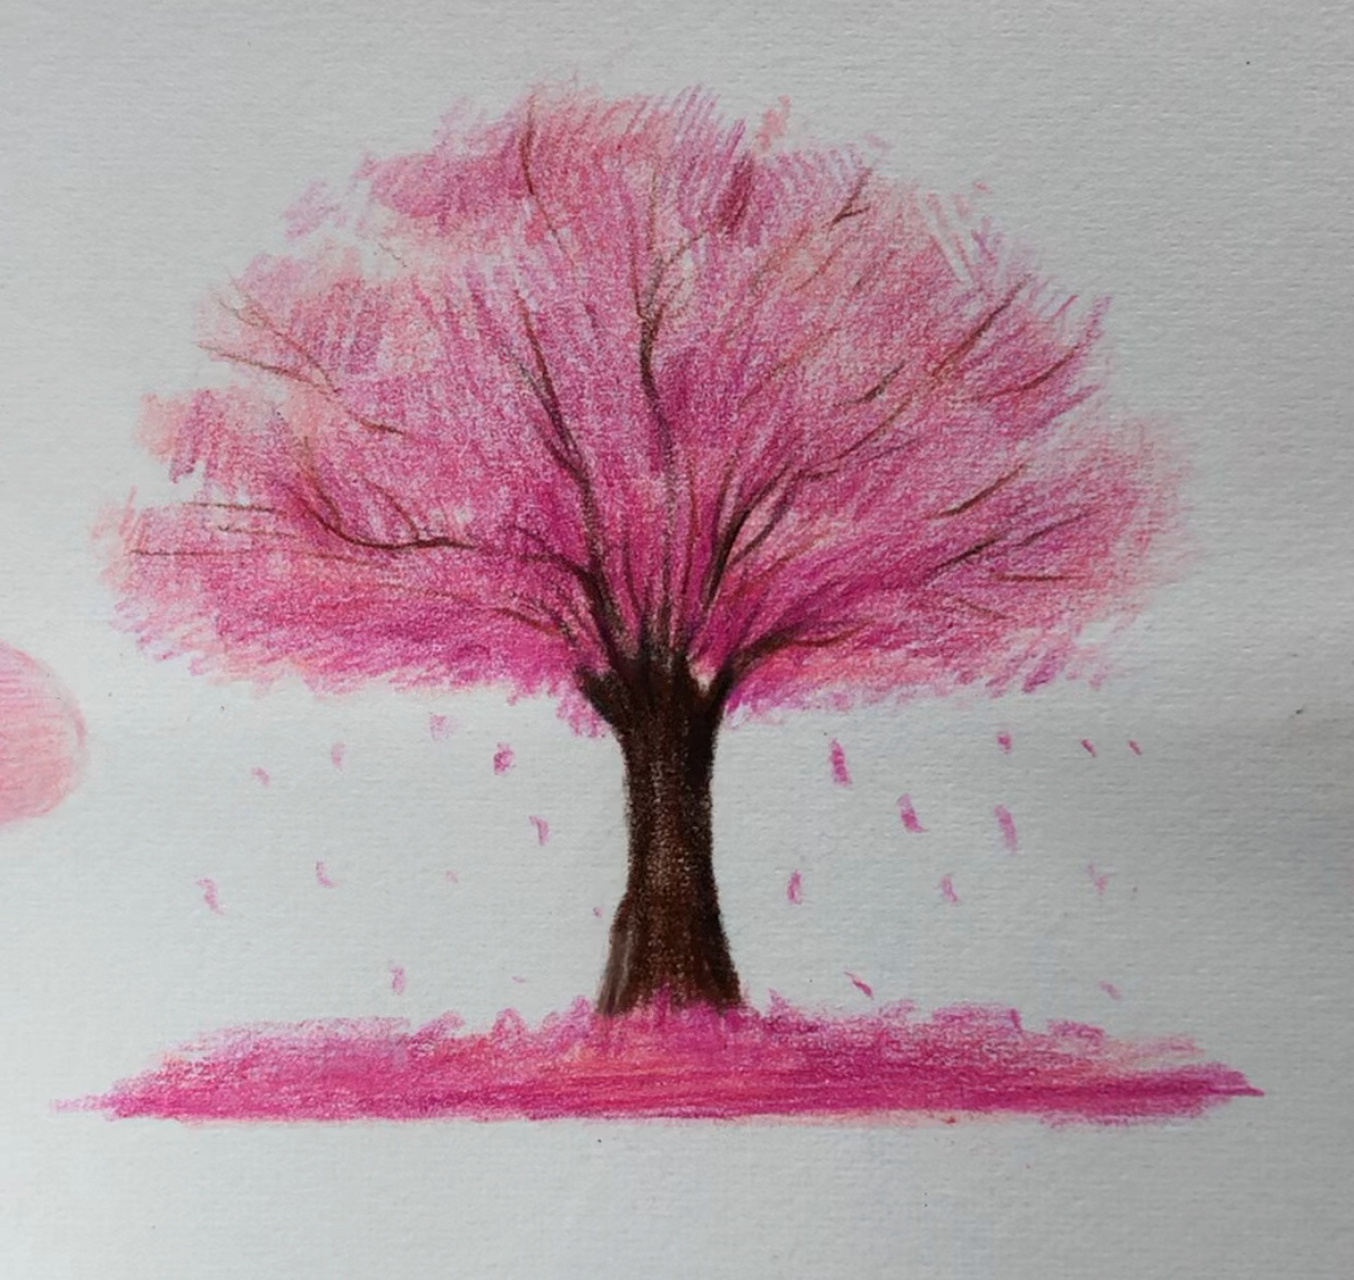 彩铅画桃花树风景图片